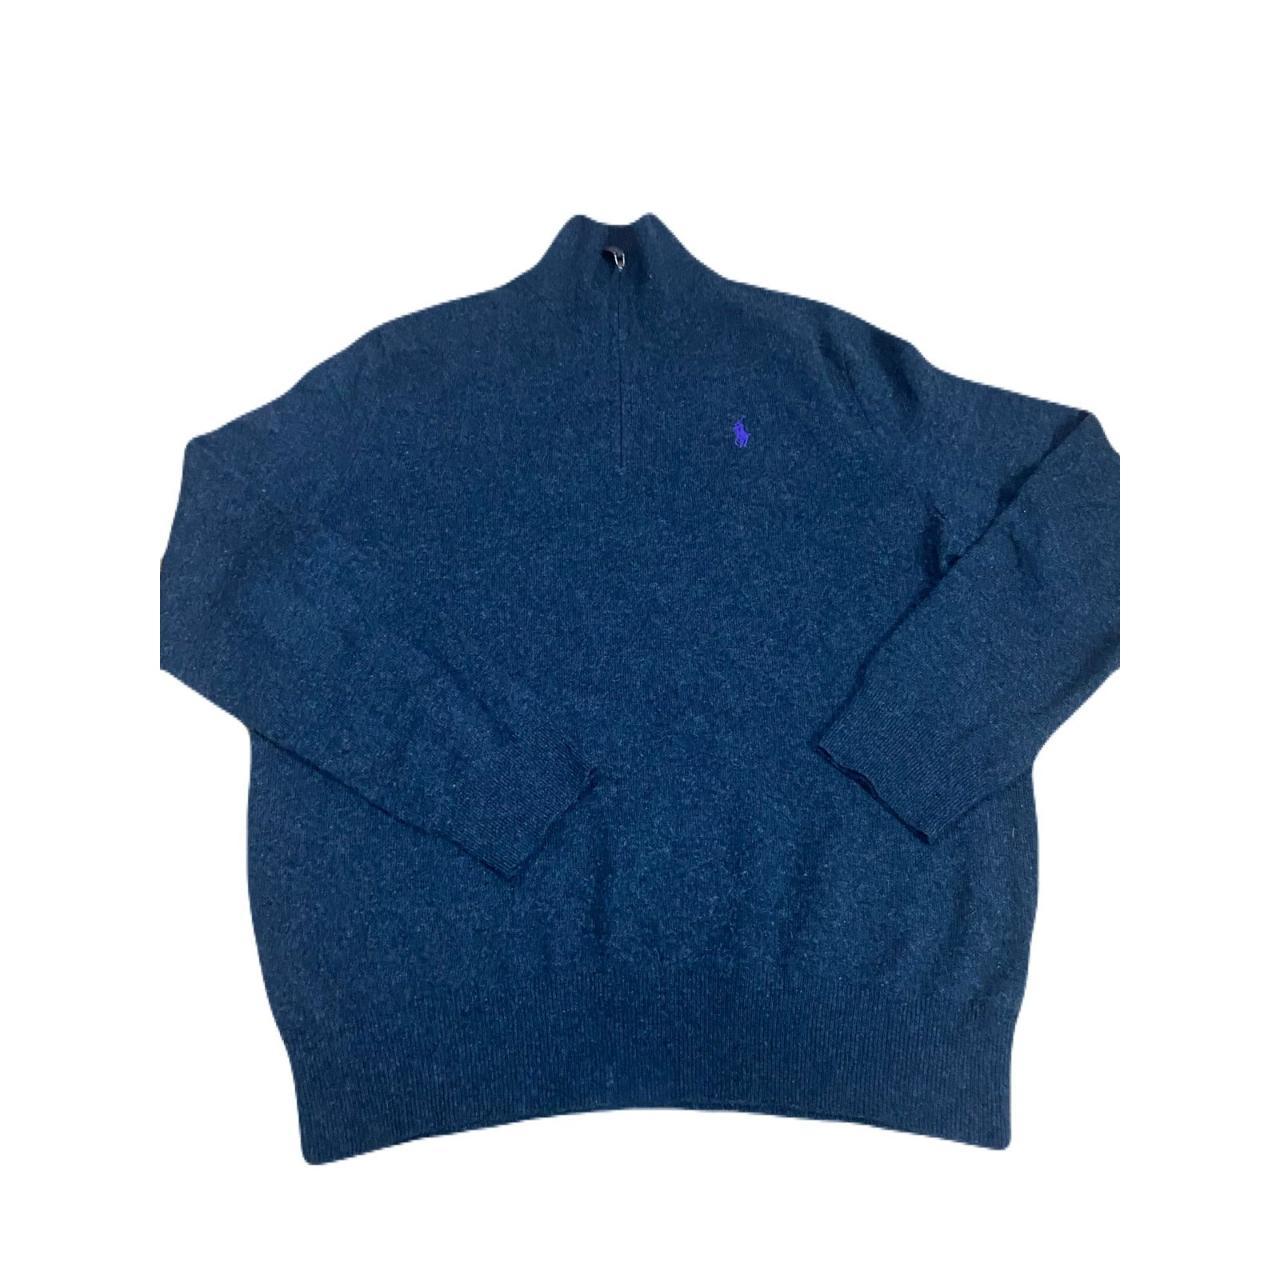 Ralph Lauren sweater men size M 100% wool dark gray... - Depop